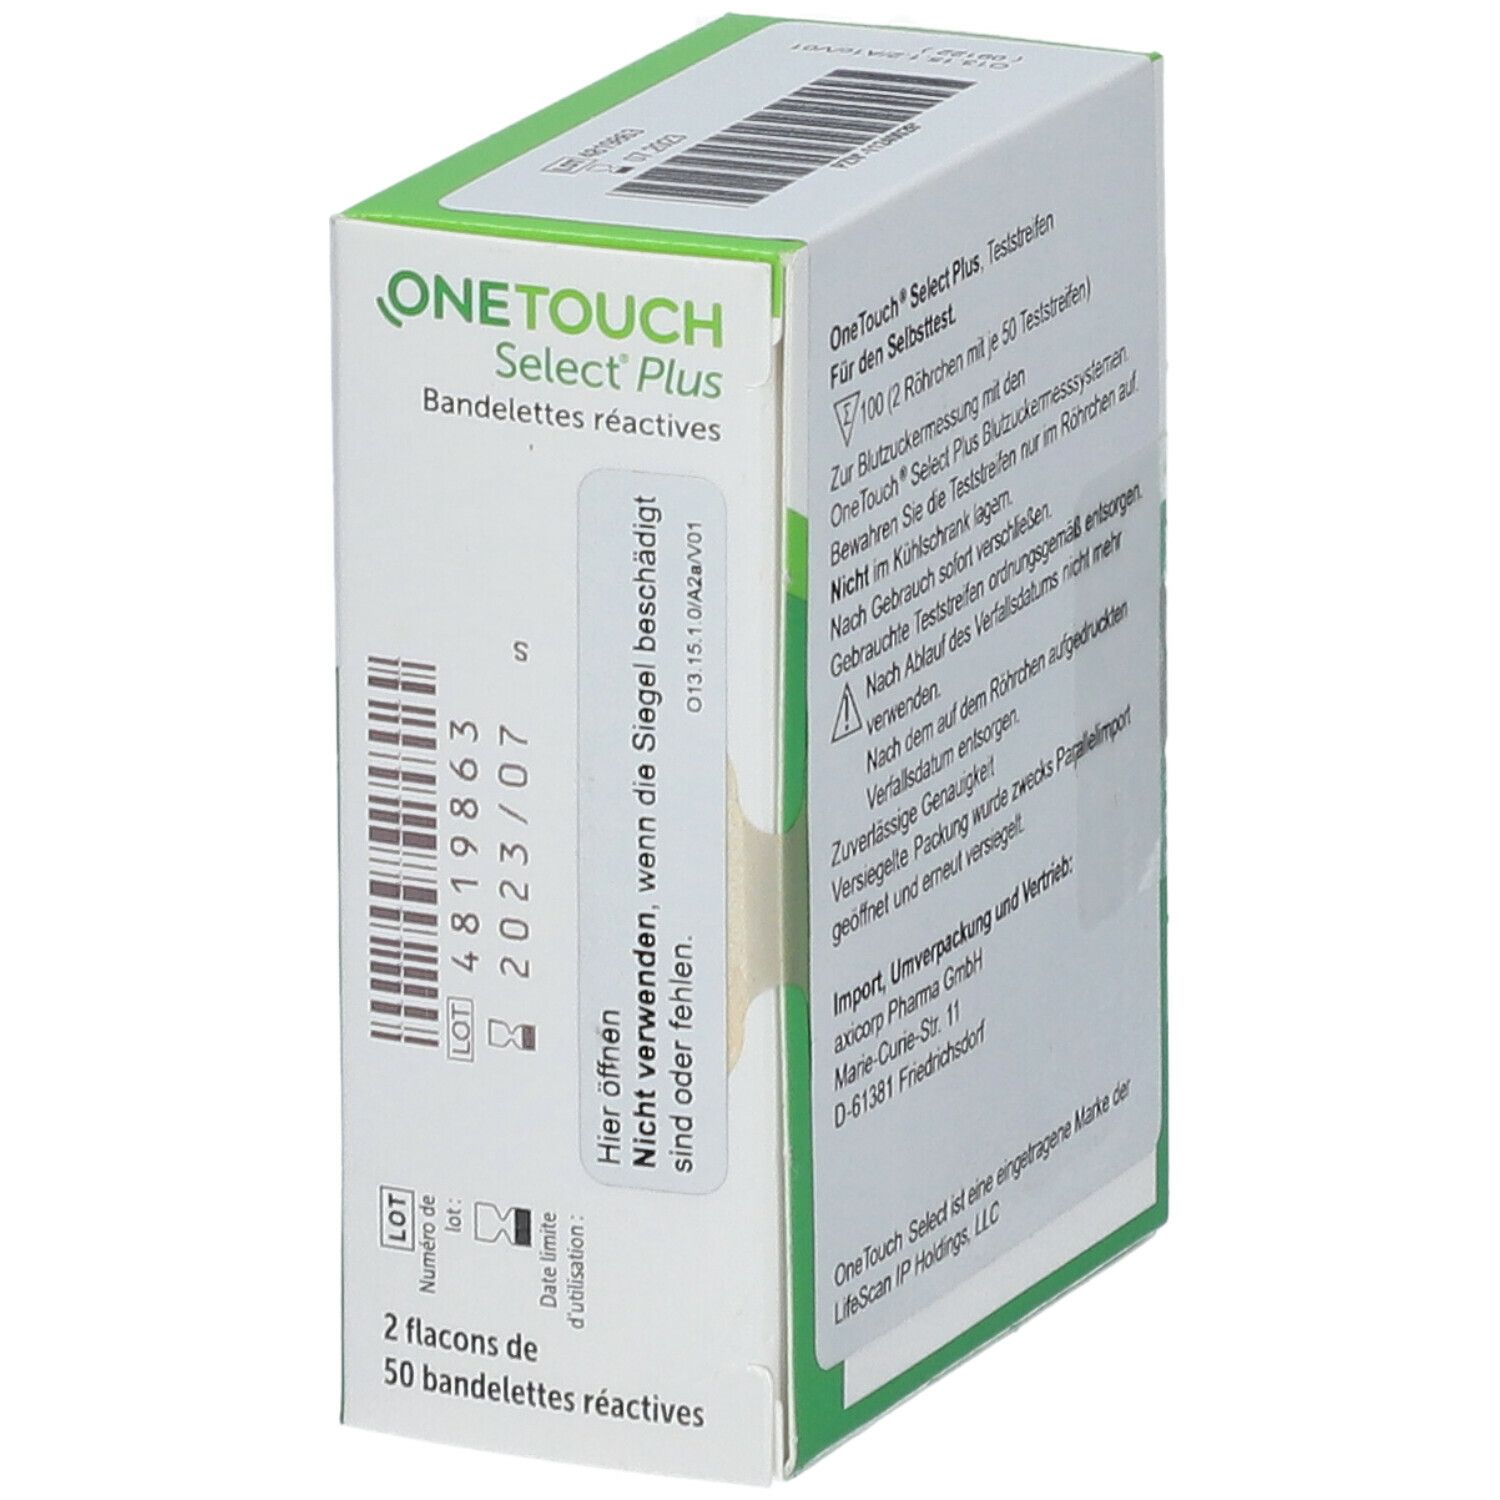 OneTouch® SelectPlus Teststreifen